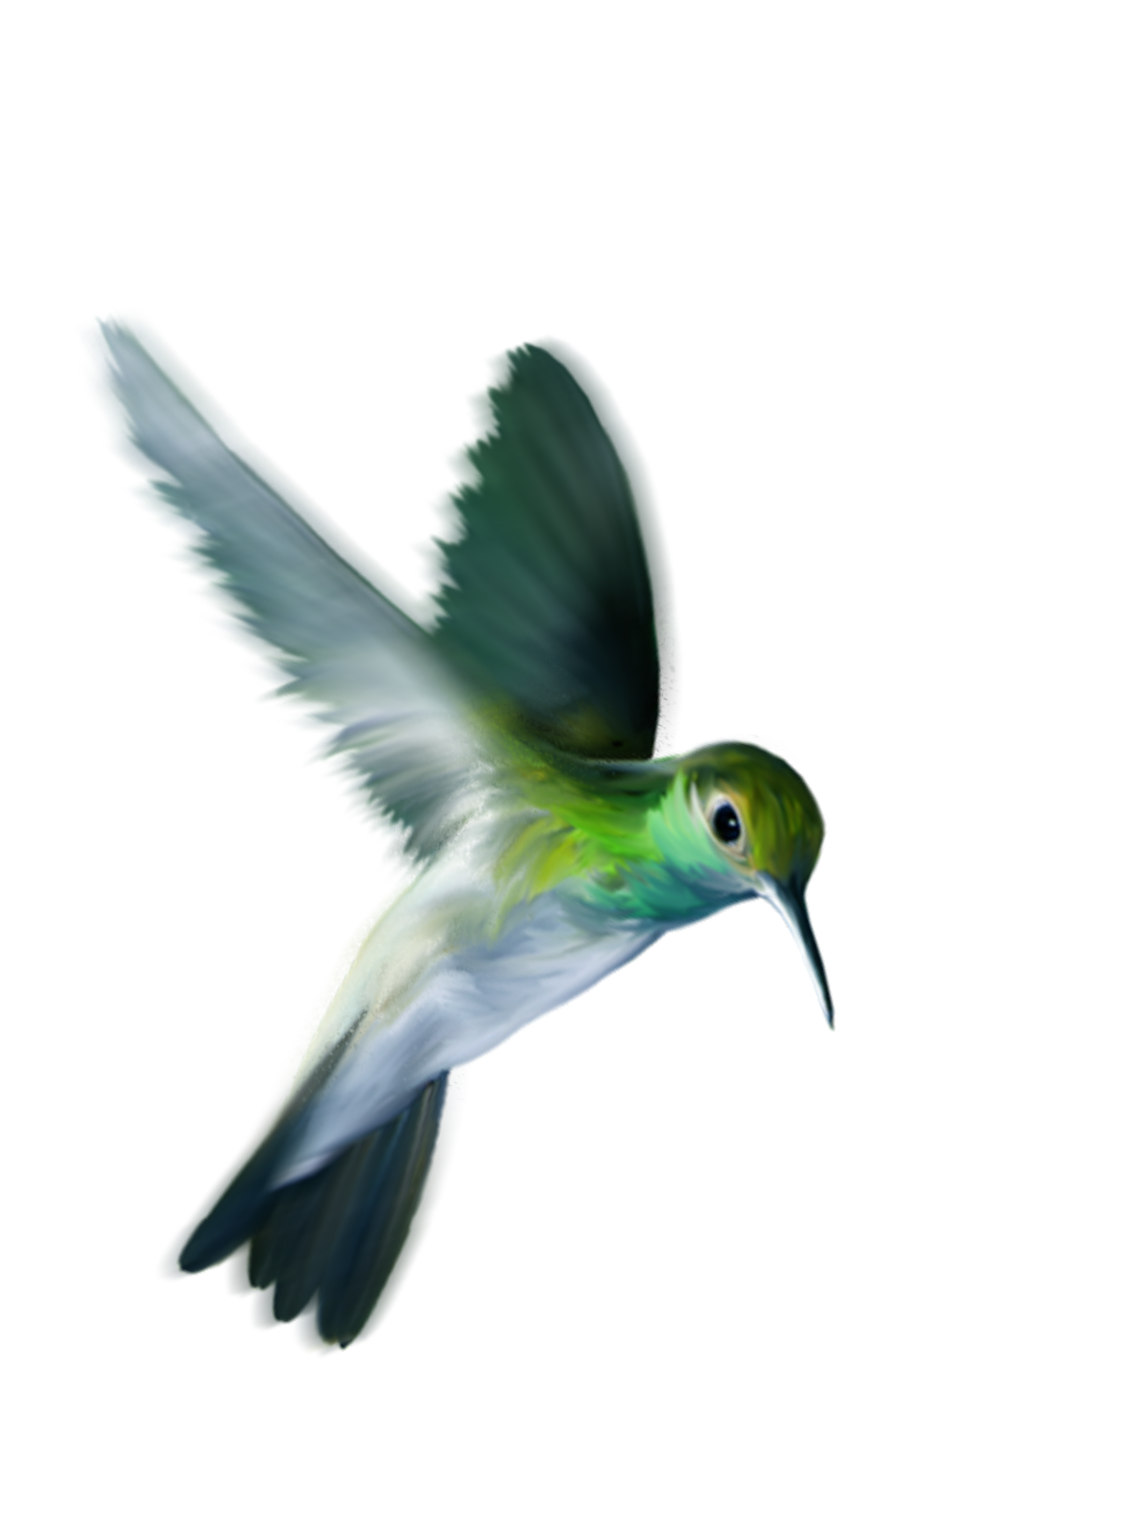 Foto colorate da hummingbird di hummingbird